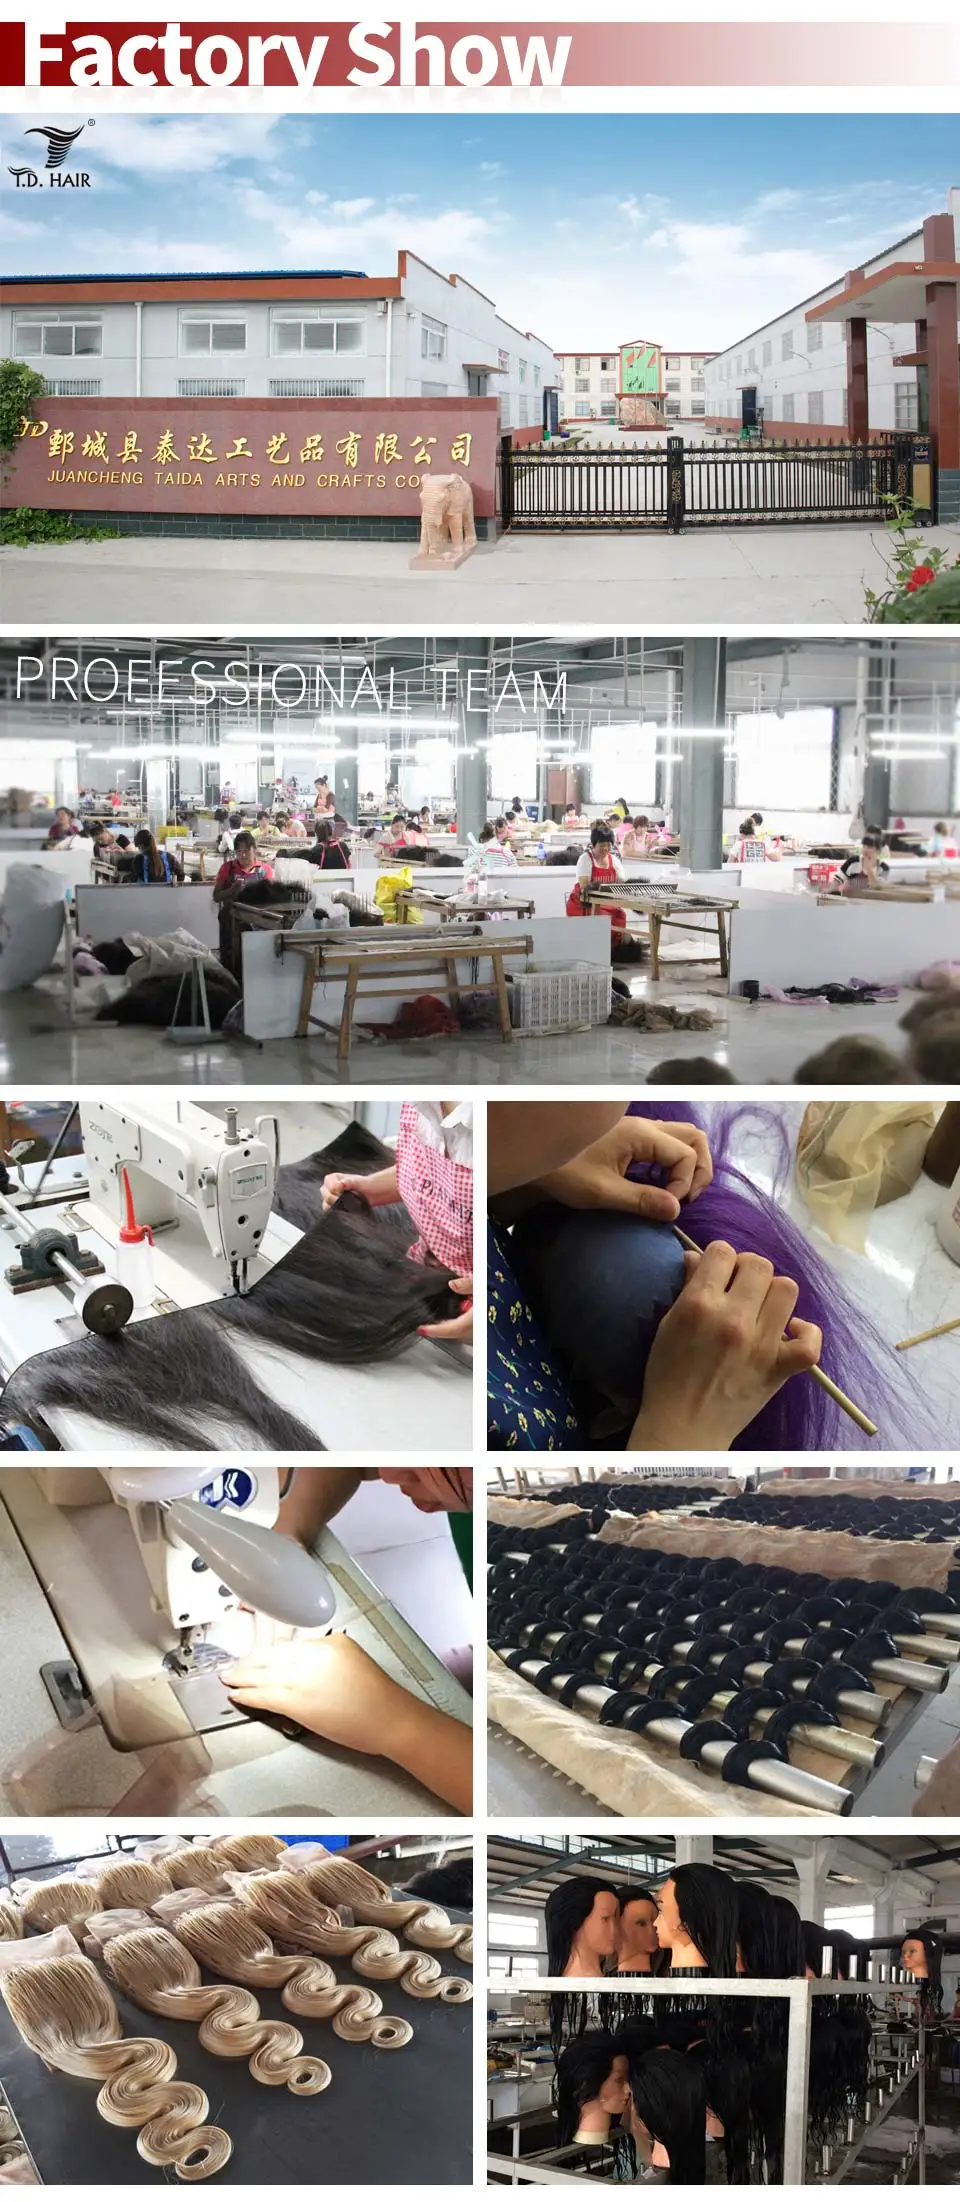 Tdhair перуанские свободные части 5x5 прямые кружева закрытие для черных женщин 8-20 дюймов человеческие волосы швейцарская шнуровка remy волосы